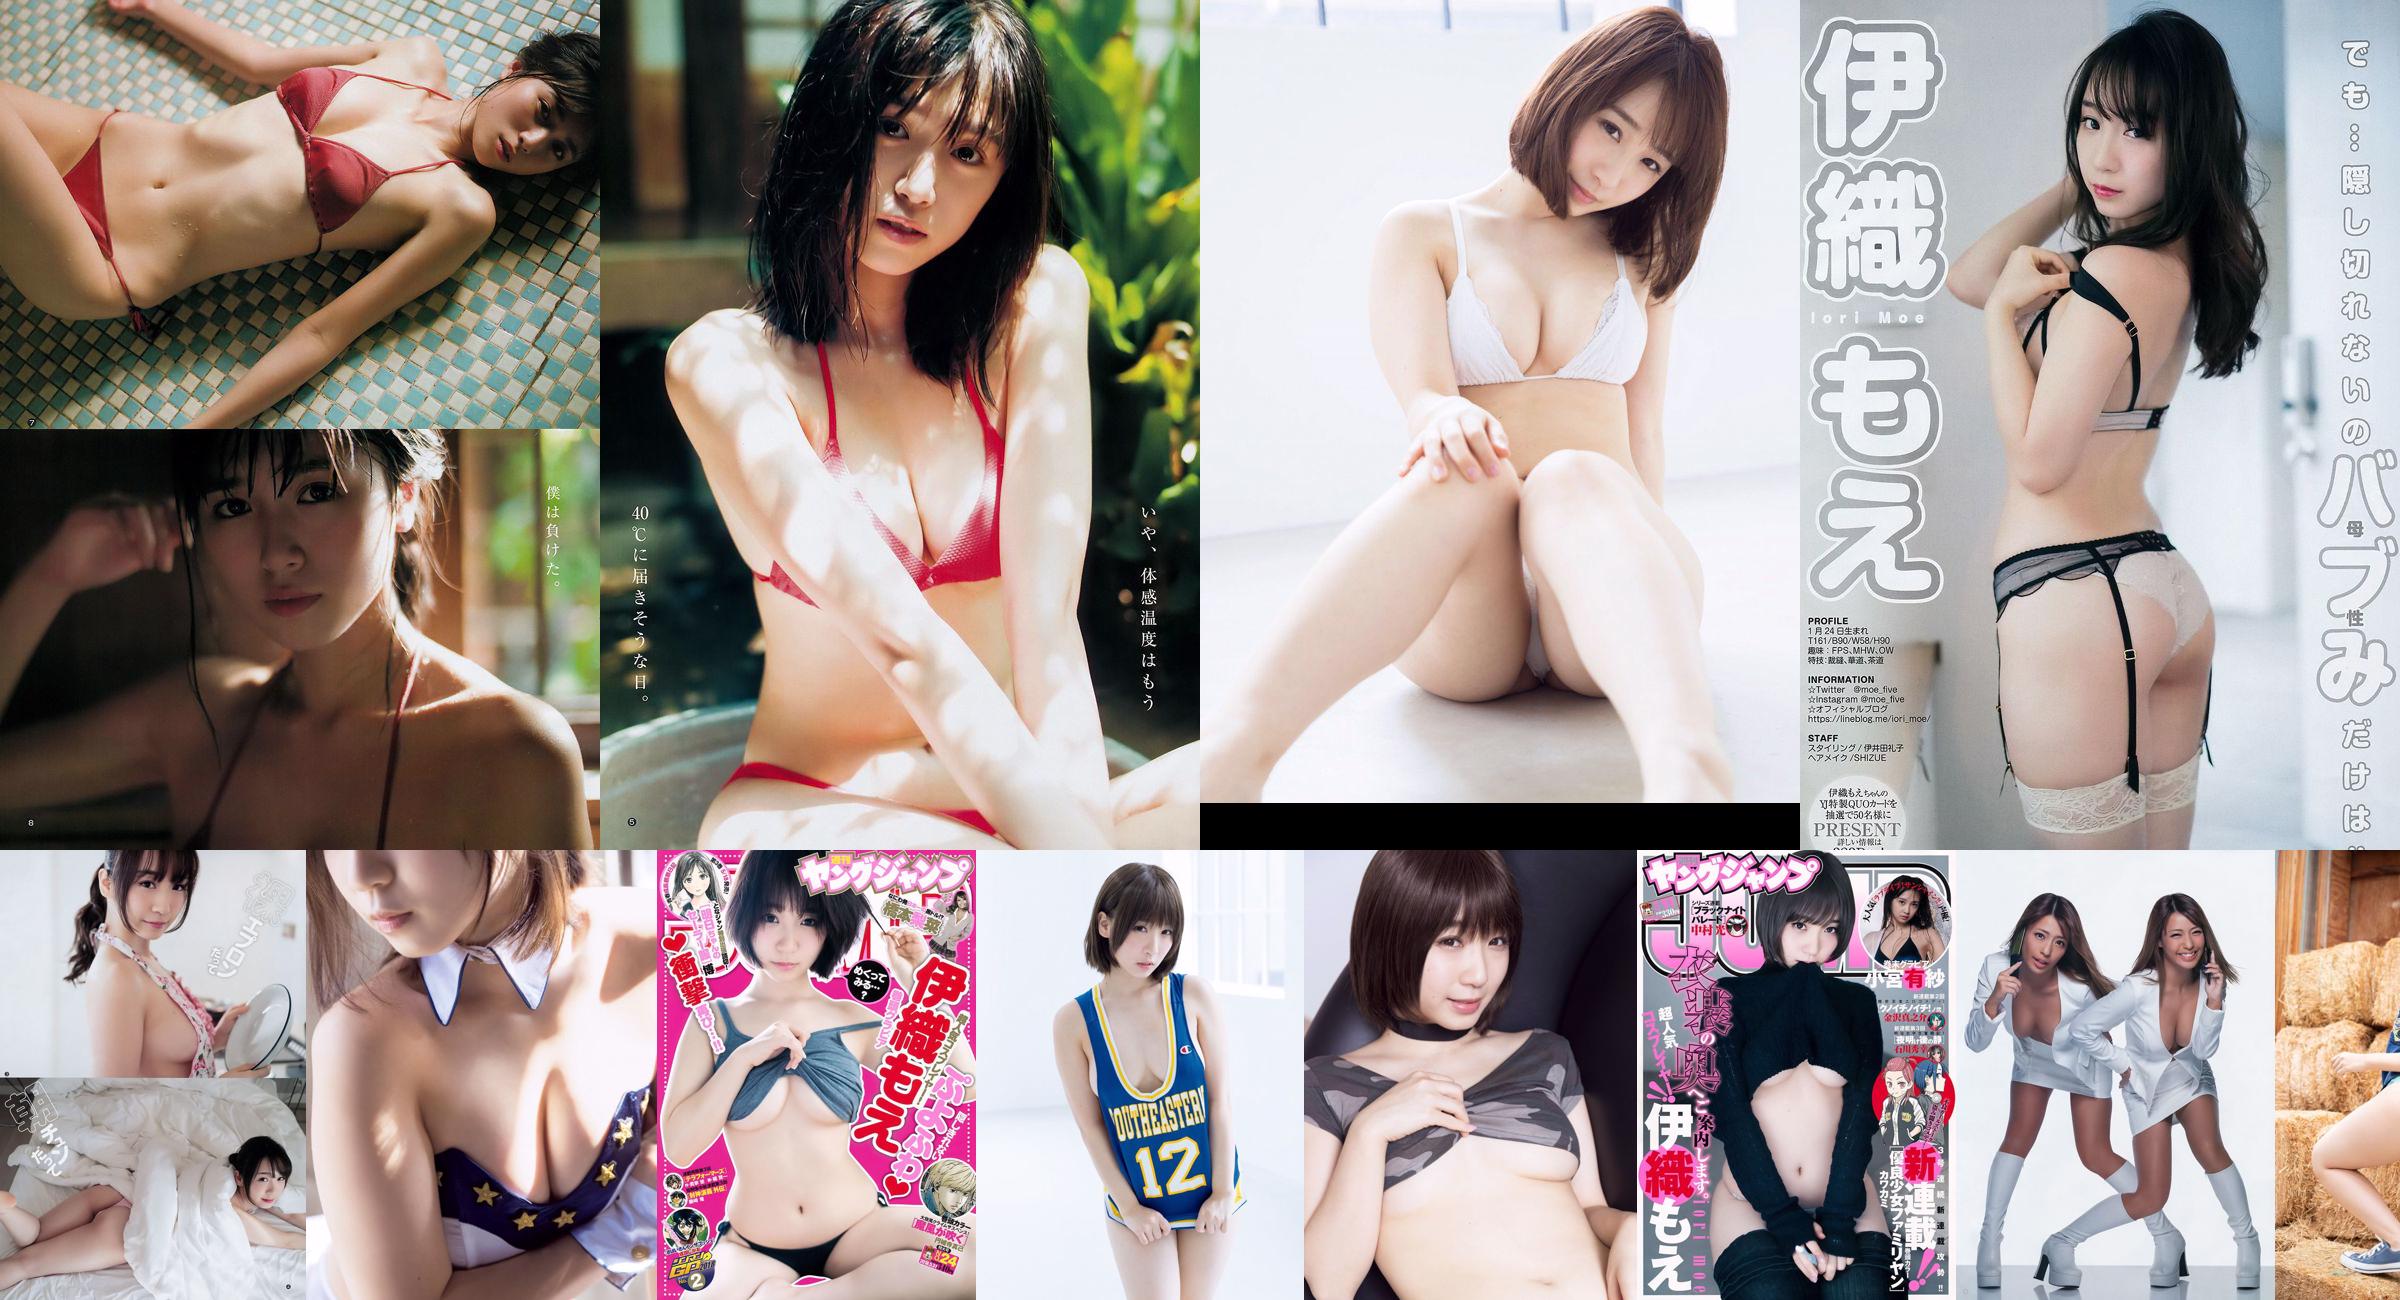 [VENERDI] Kitazu Yui "Il corpo di bellezza più bello di 18 anni" Il bikini più alto di quest'anno! No.f644be Pagina 1